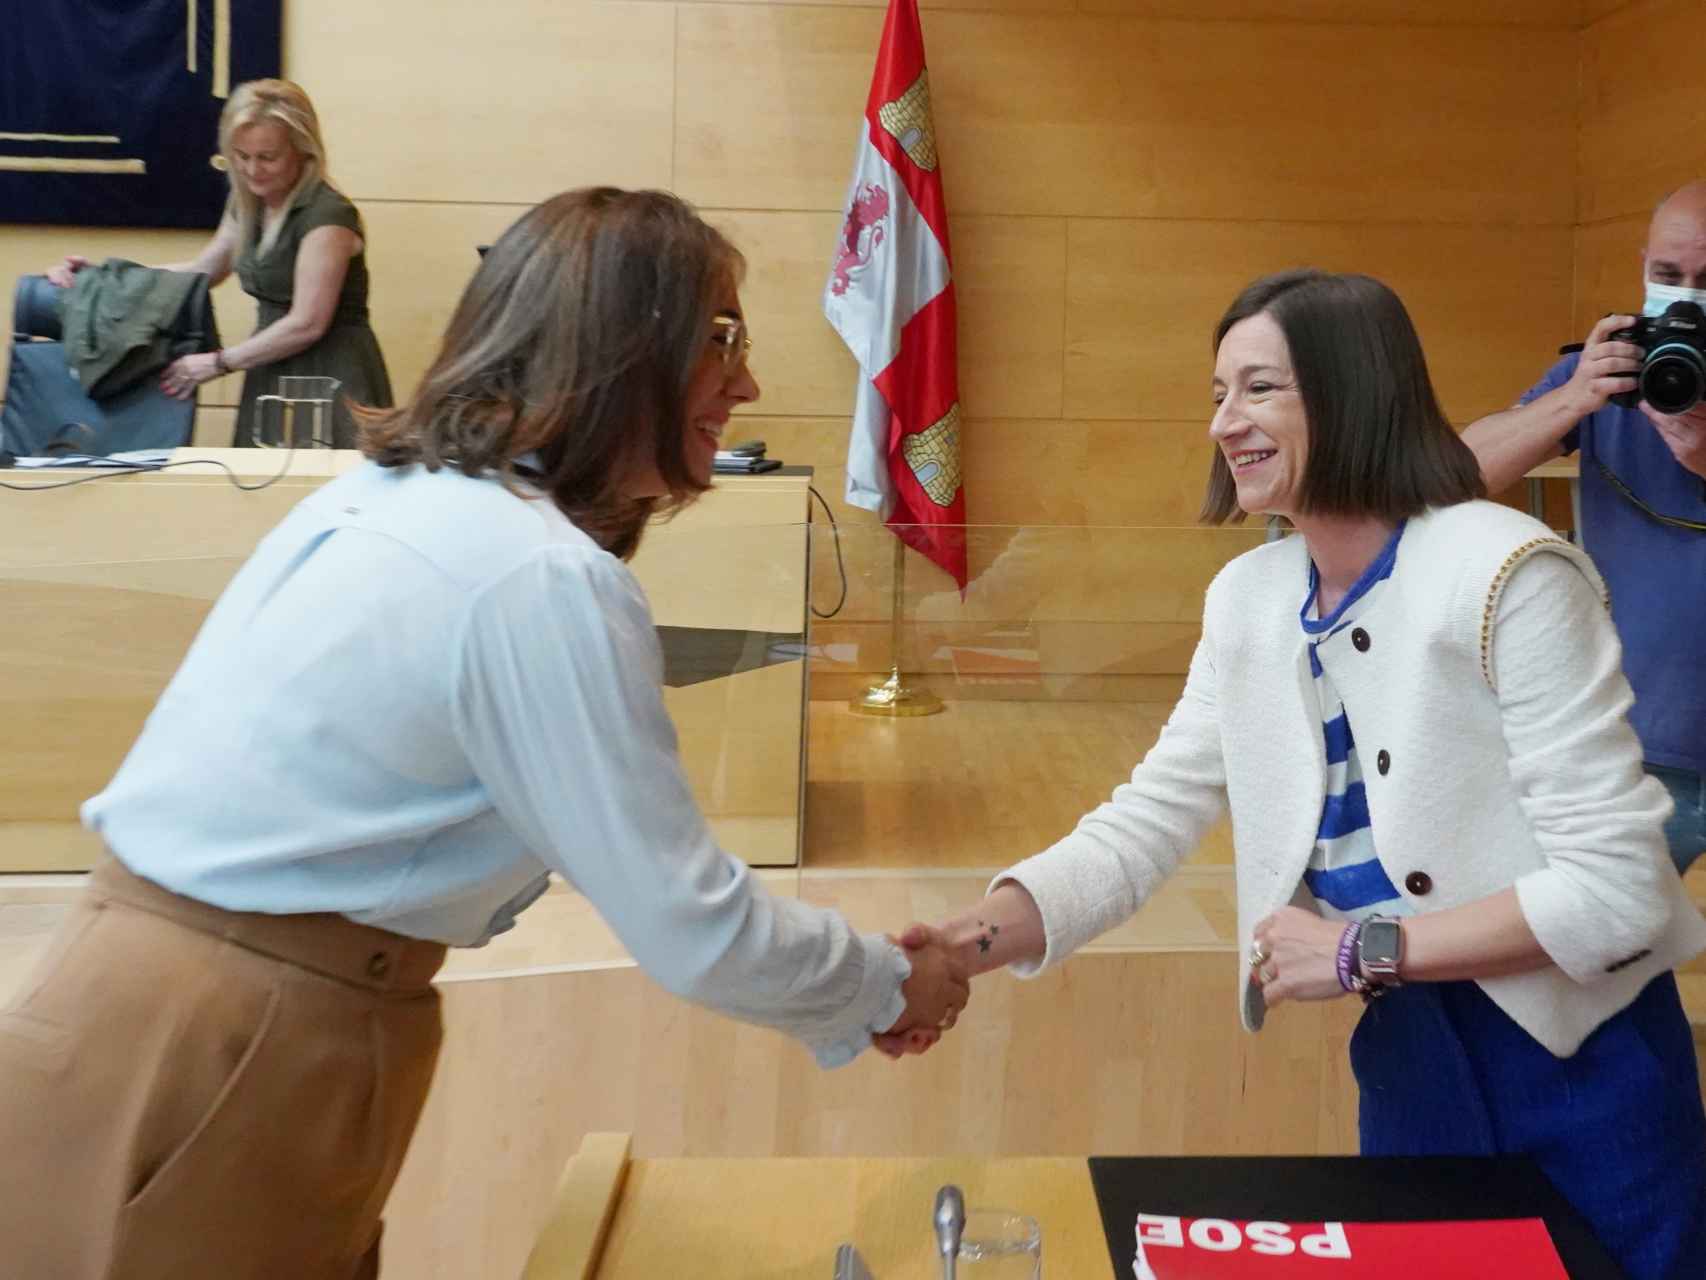 La consejera de Movilidad, María González, saluda a la procuradora socialista Laura Pelegrina, este miércoles en las Cortes.